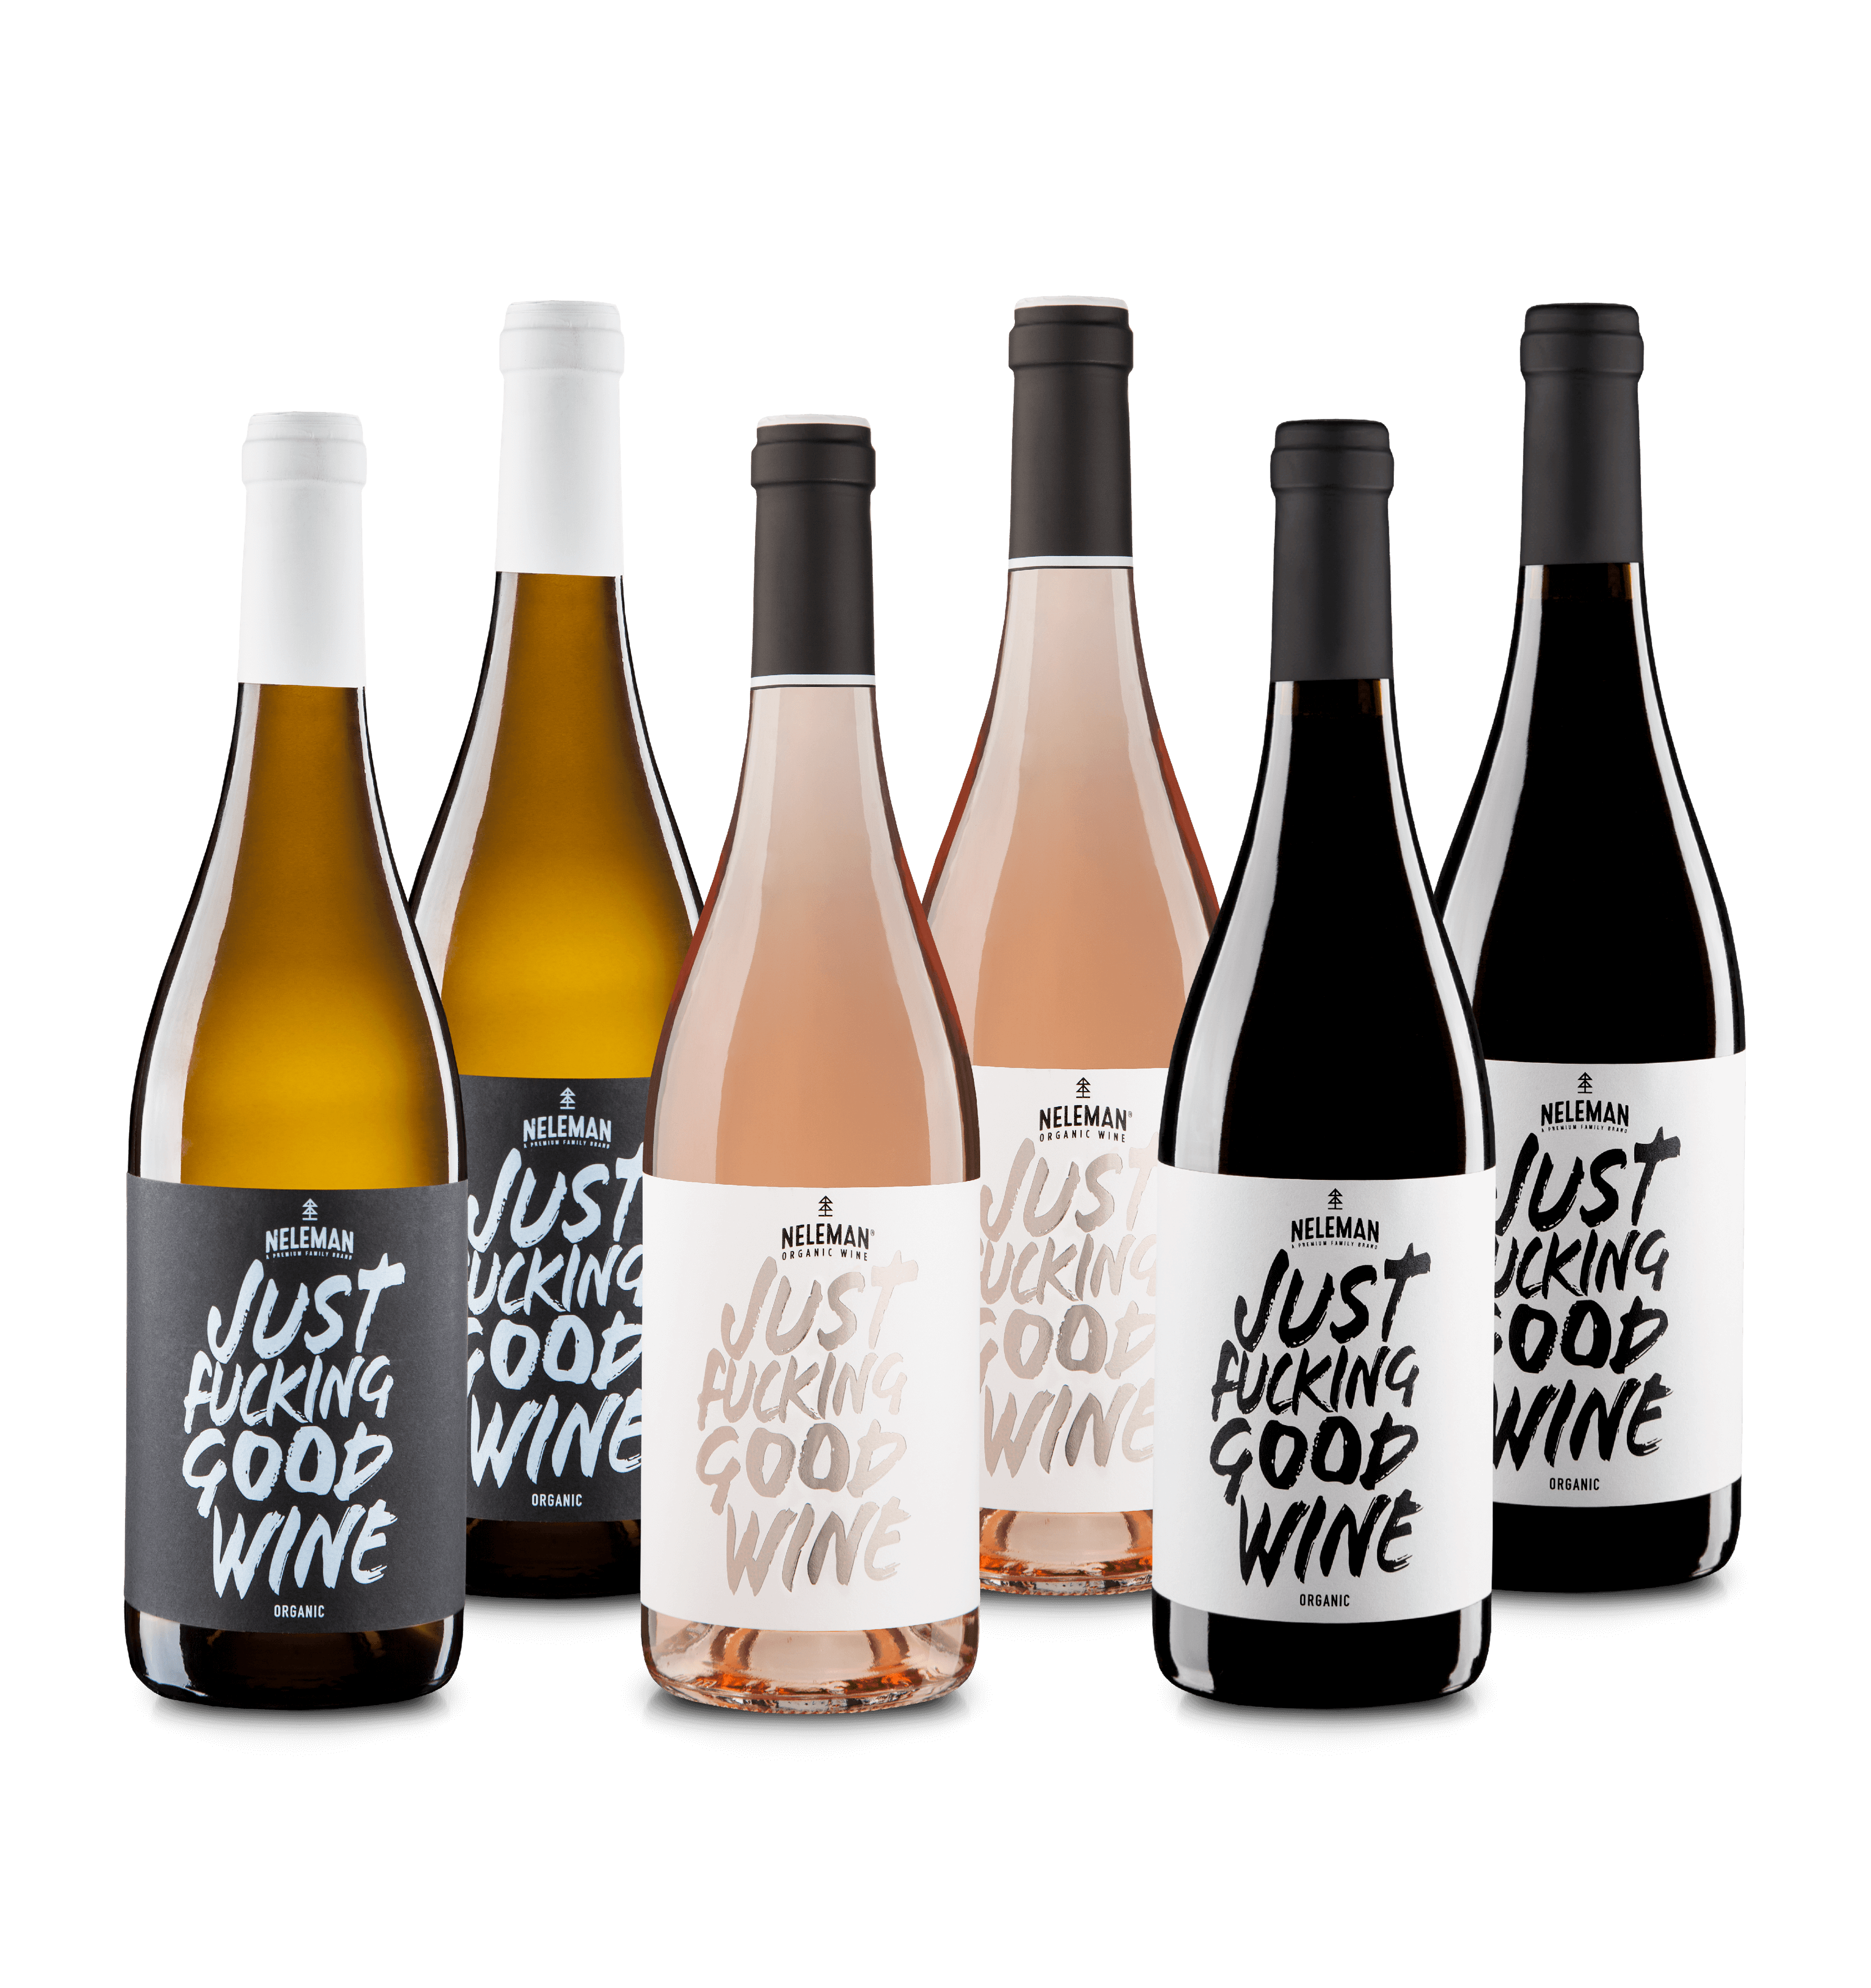 Just Fucking Good Wine Wijnpakket Organic